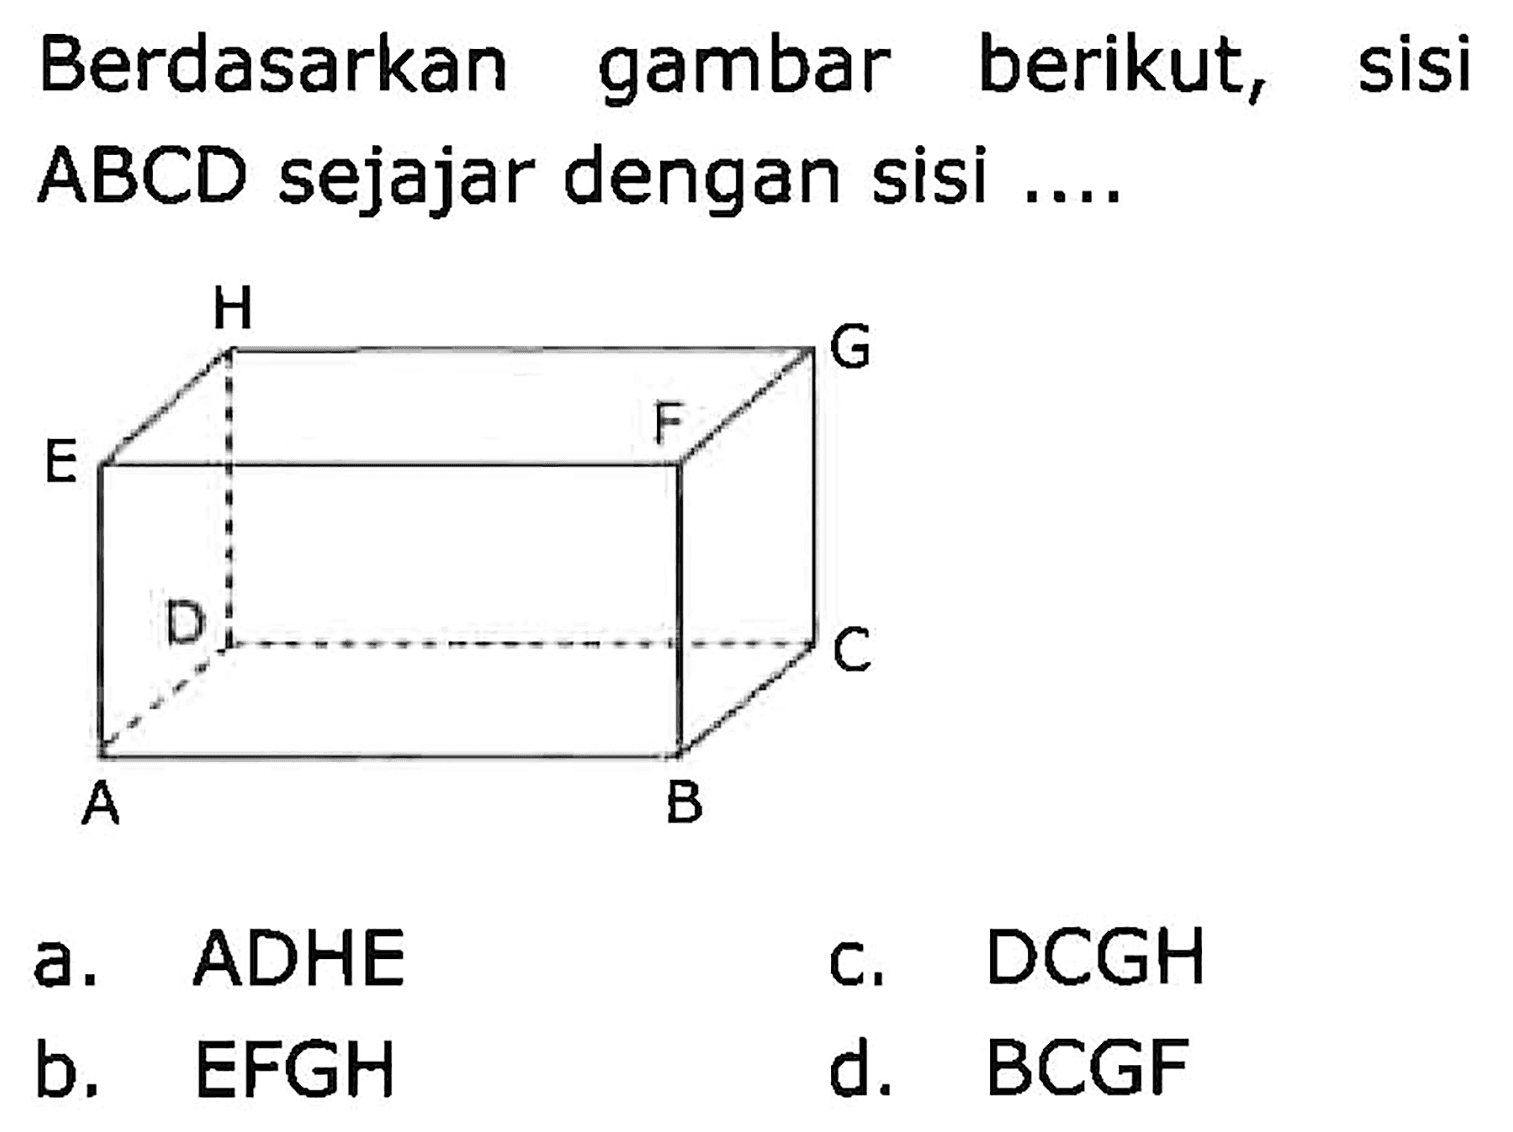 Berdasarkan gambar berikut, sisi ABCD sejajar dengan sisi ....
a. ADHE
c. DCGH
b. EFGH
d. BCGF